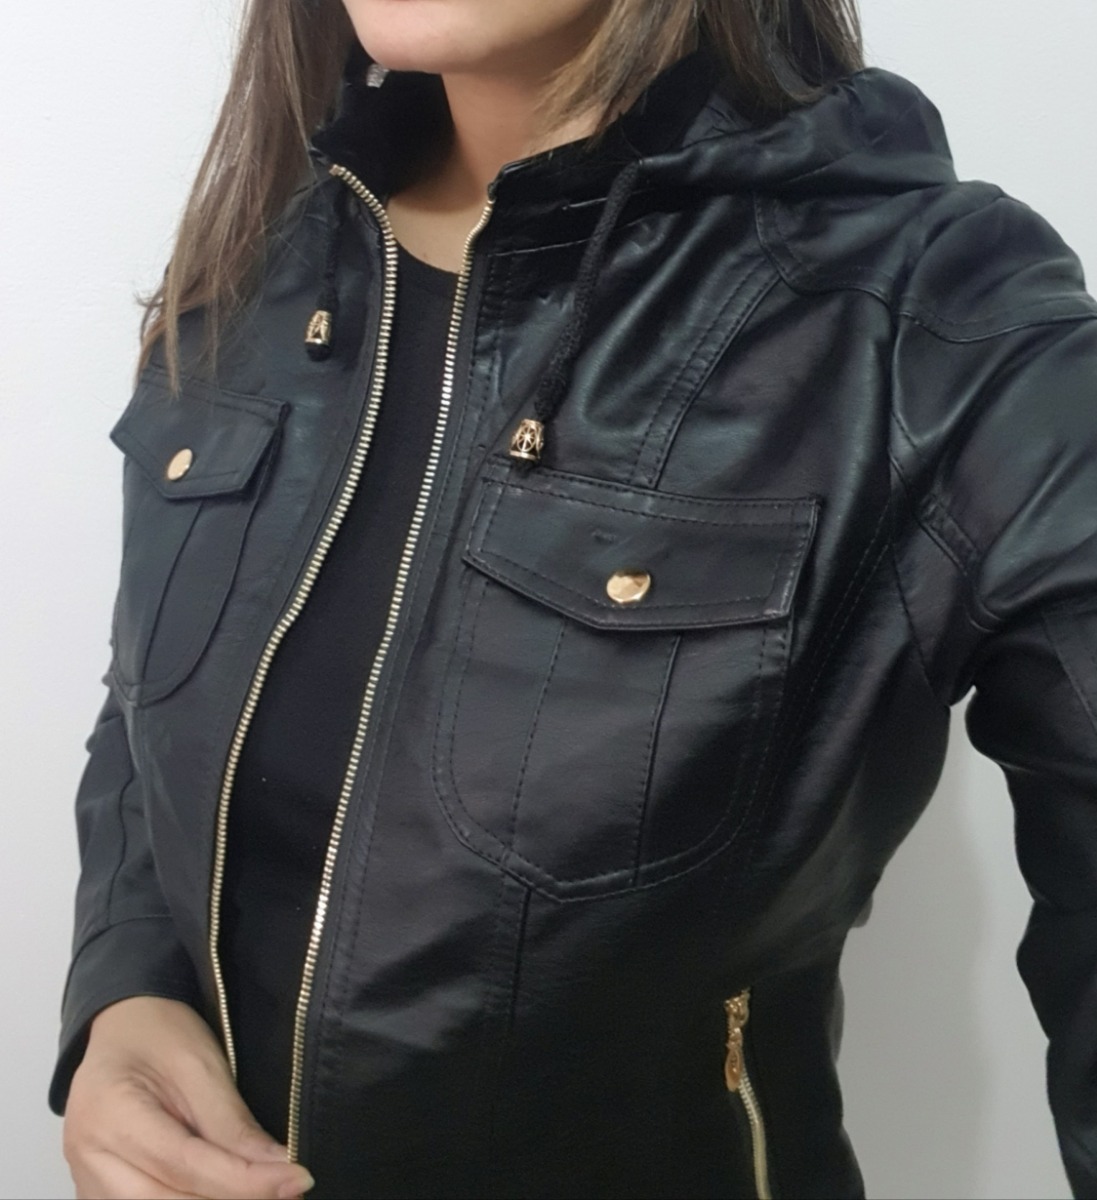 jaqueta preta feminina com capuz